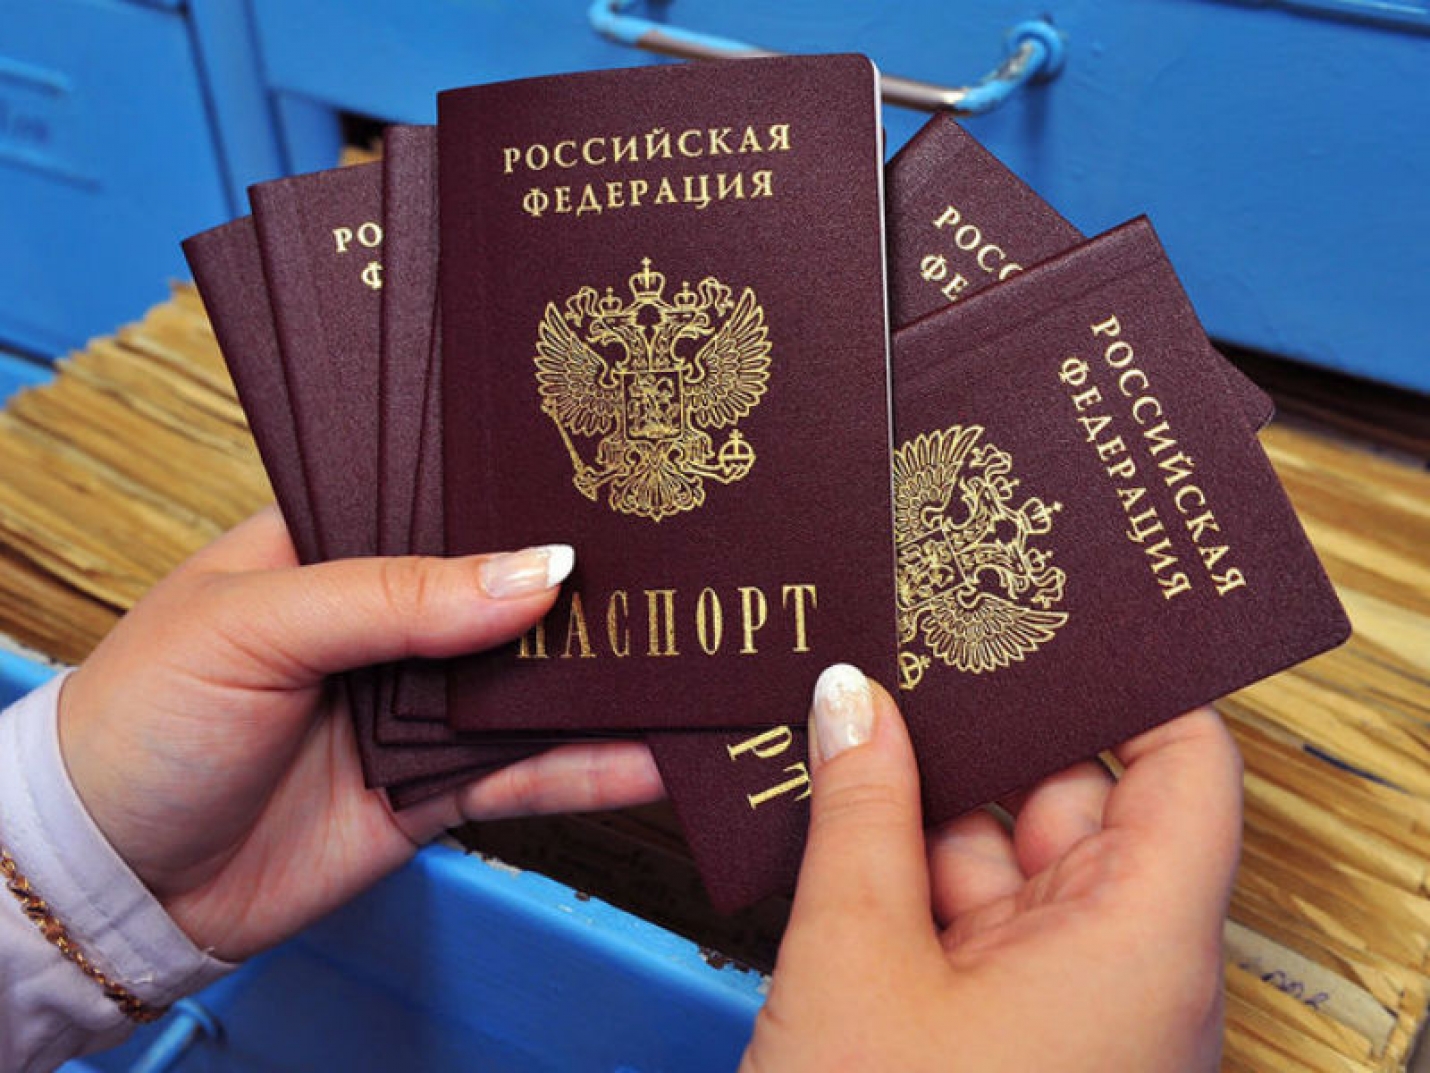 Последствия голосования: хакеры продают номера паспортов россиян